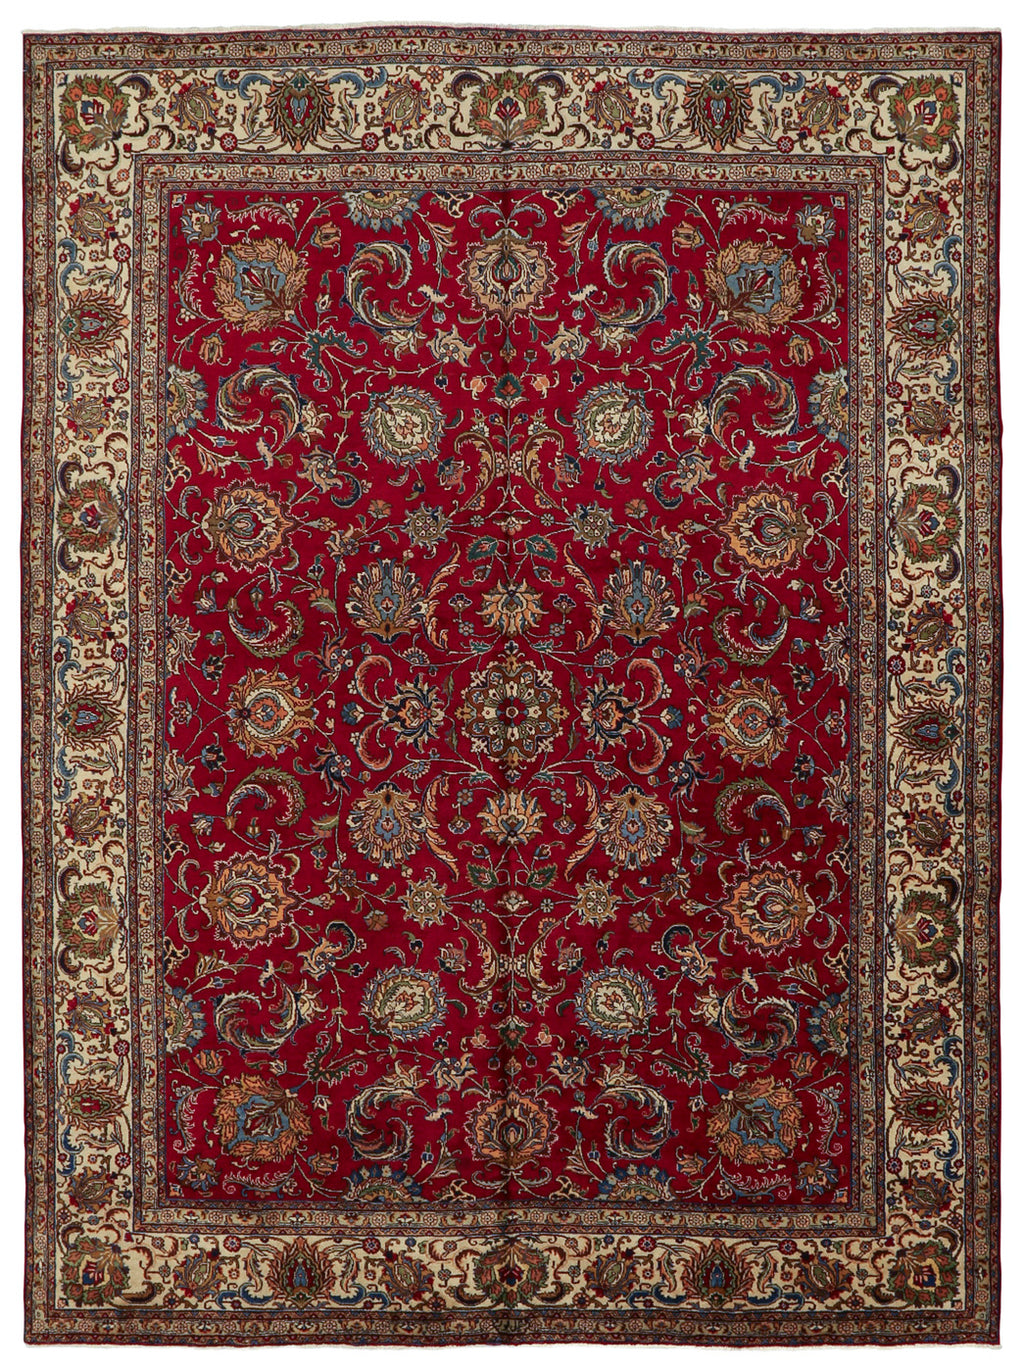 Persian - Vintage Wool Rug 9'10''x13'9''